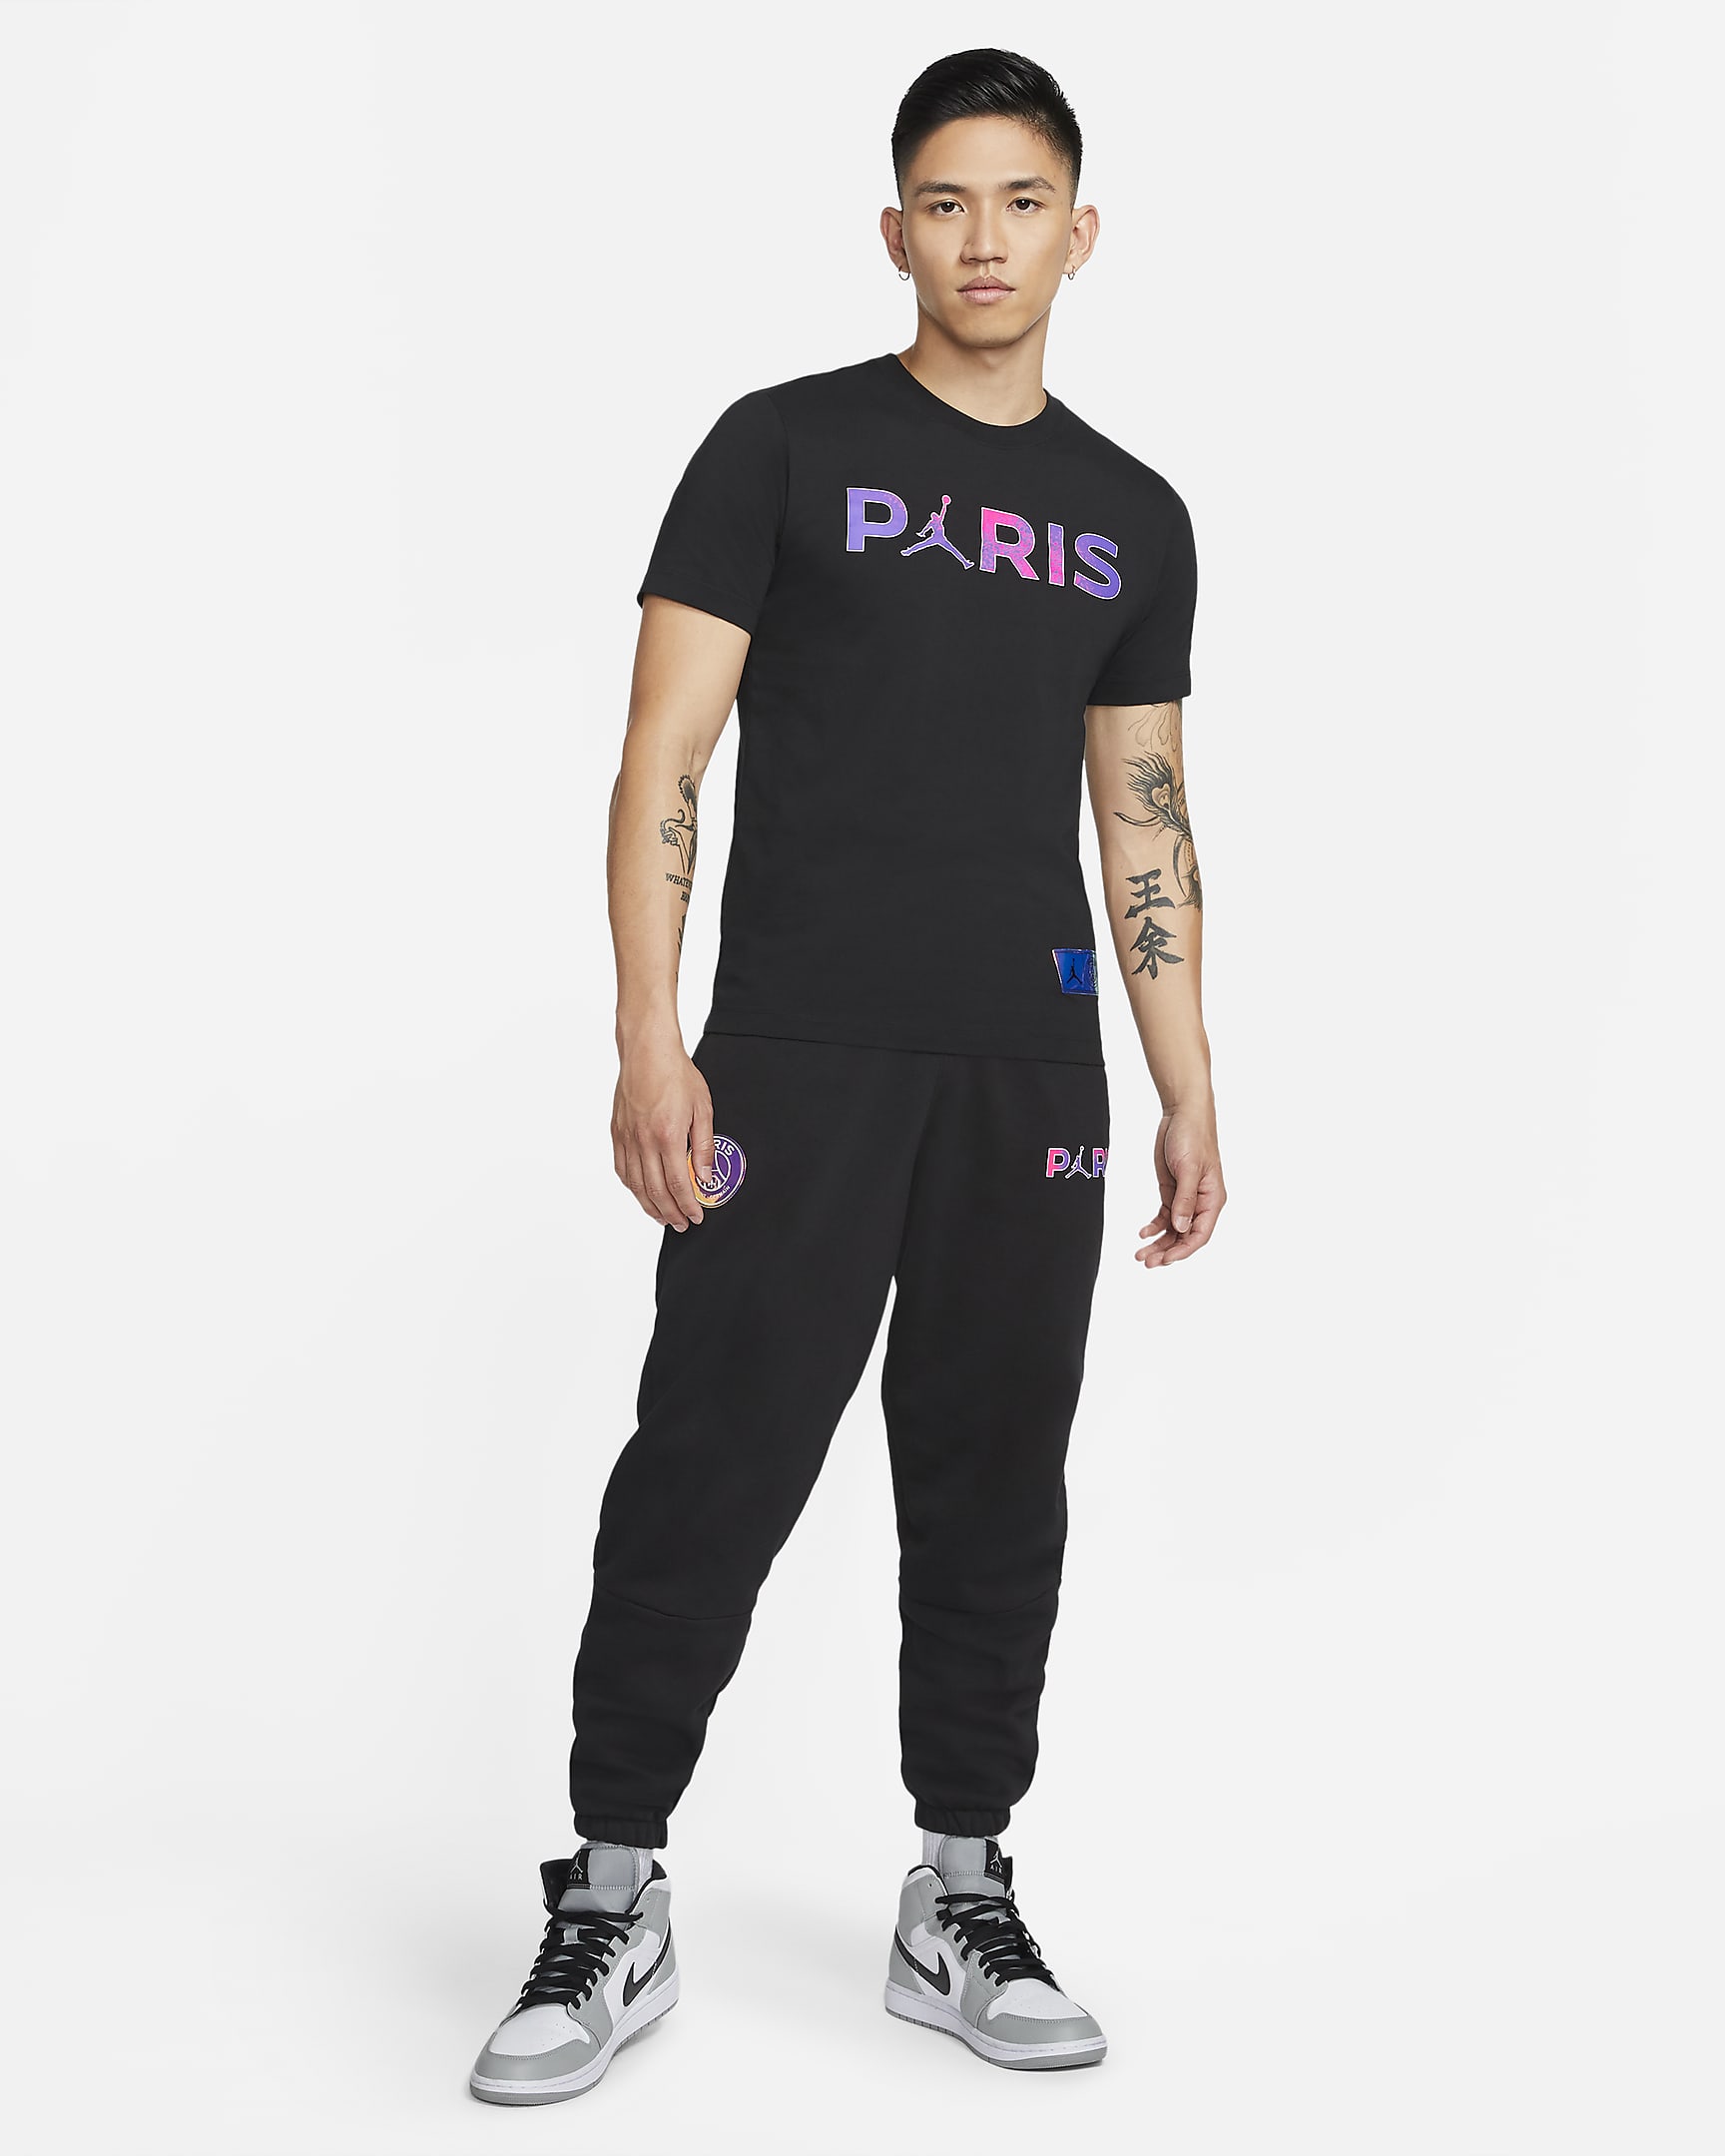 Paris Saint-Germain Men's T-Shirt. Nike AU